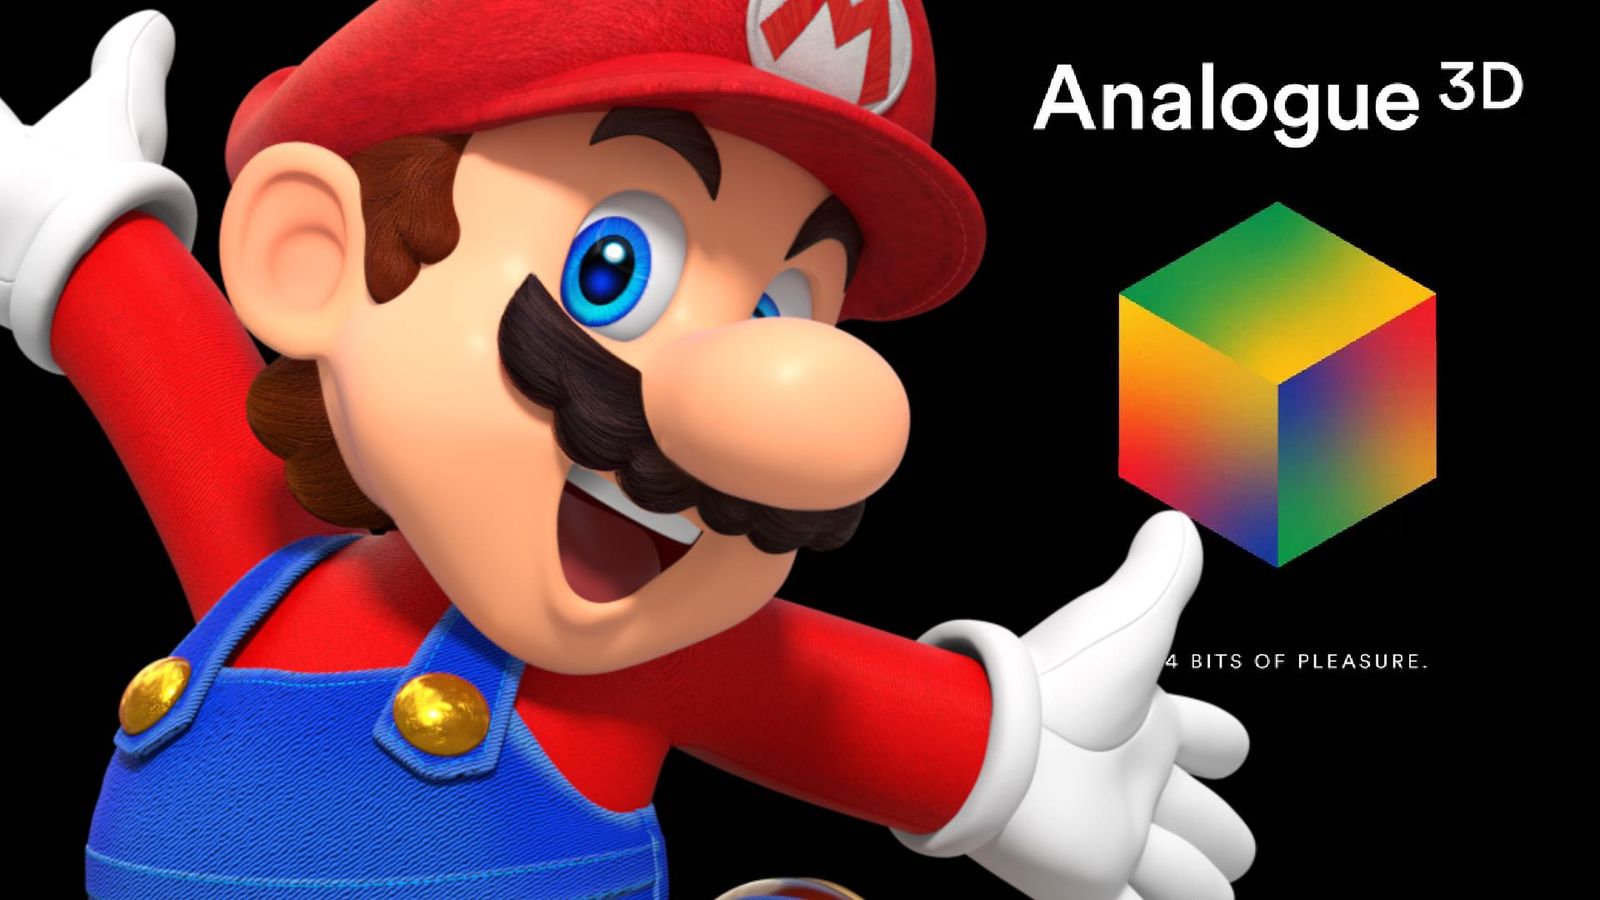 Mario reacting to the Analogue 3D FPGA Nintendo 64 console 